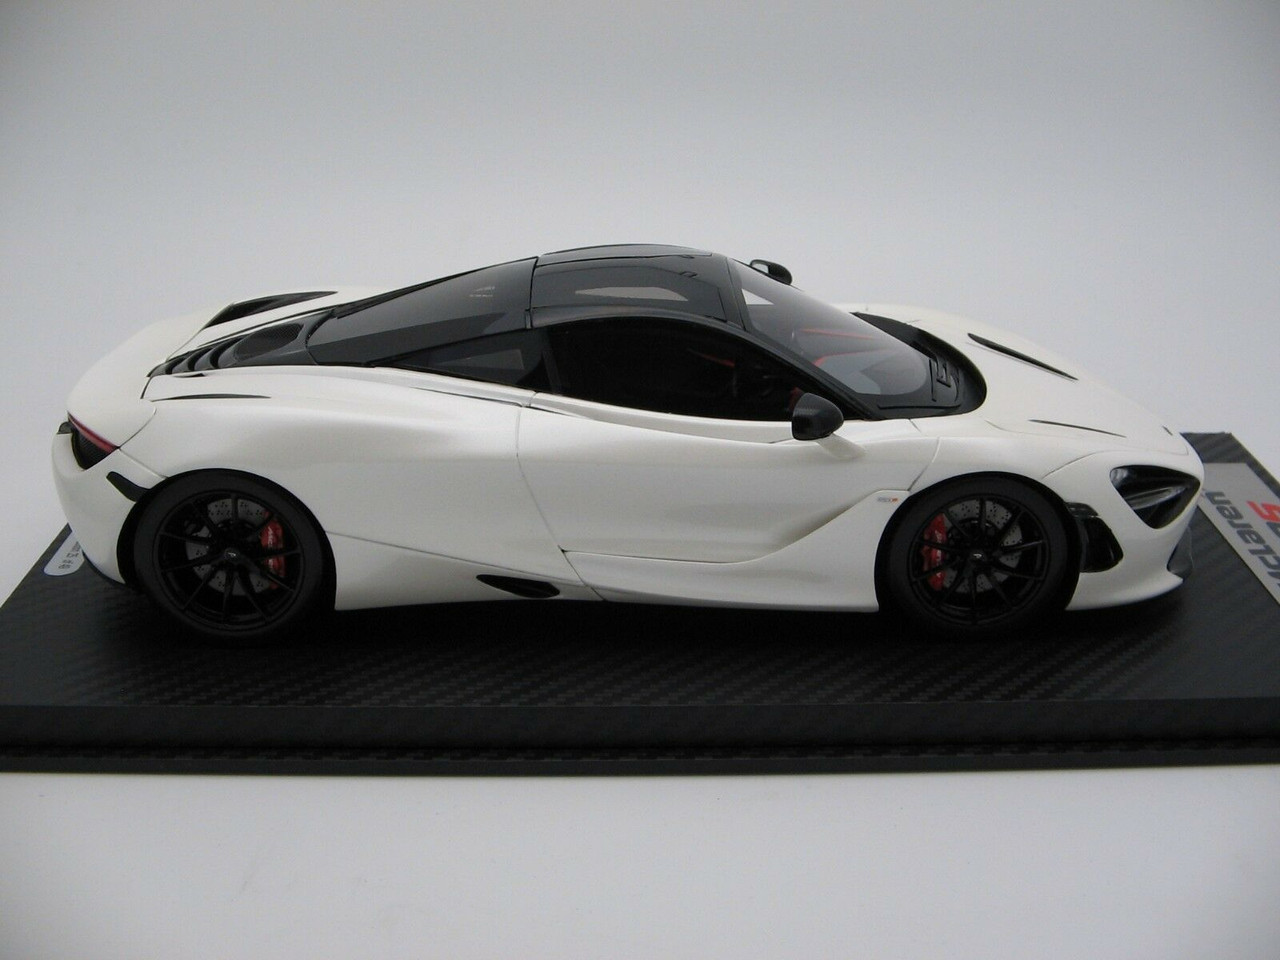 1/18 Tecnomodel McLaren 720S (White) Resin Car Model Limited